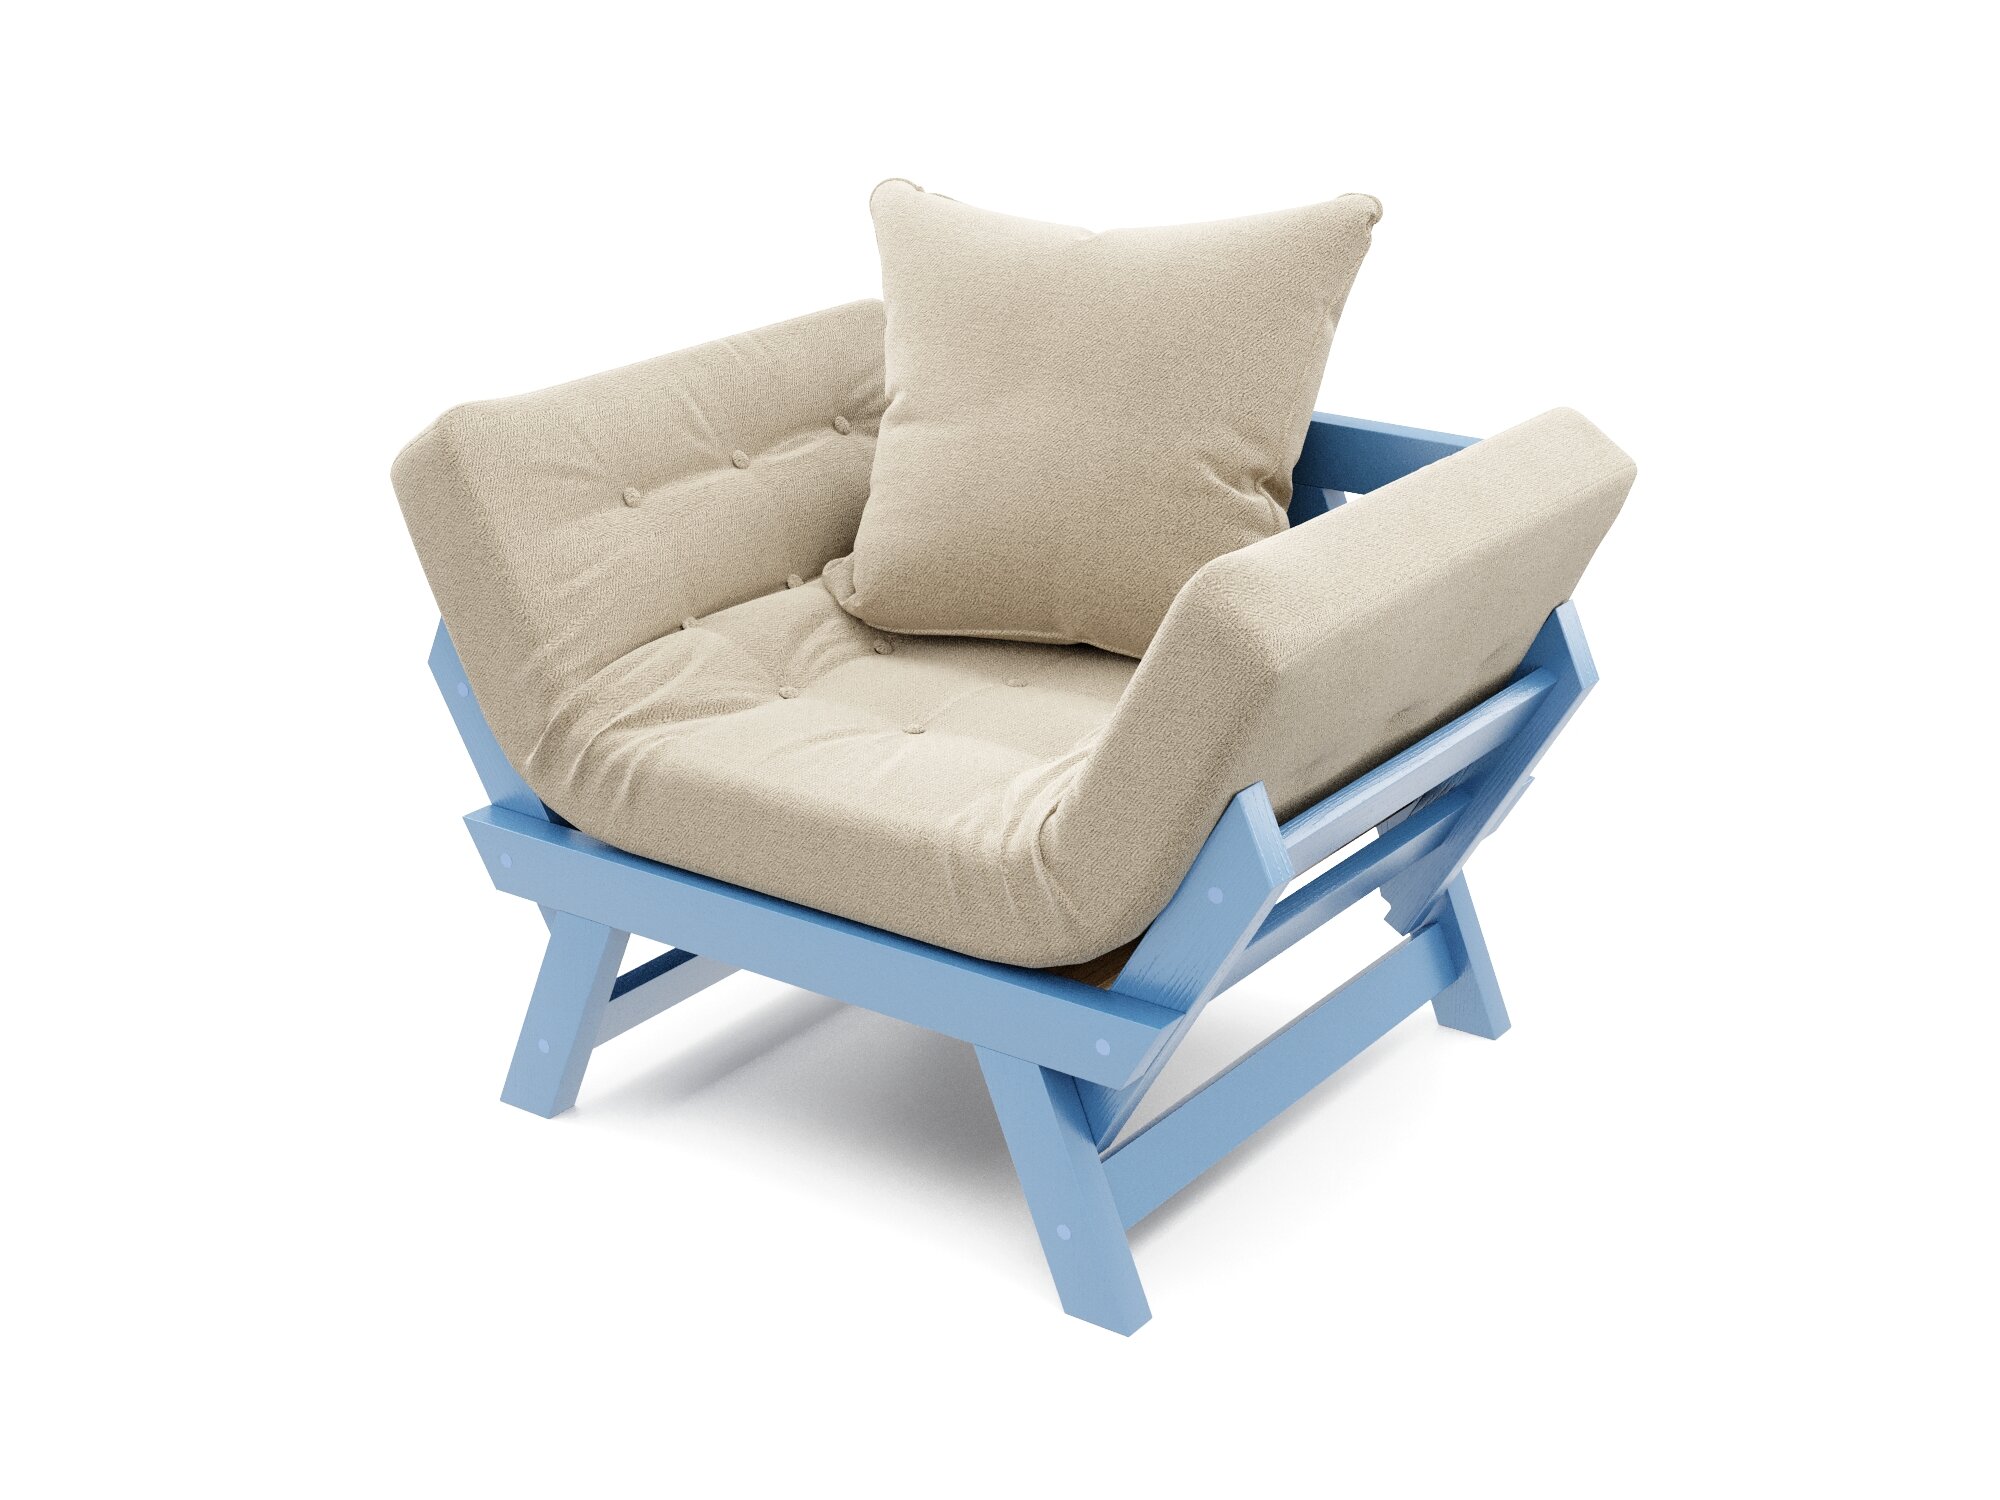 Деревянное кресло Soft Element Оден, раскладные подлокотники, бежевый-голубой, рогожка, современный стиль скандинавский лофт, для дома и дачи